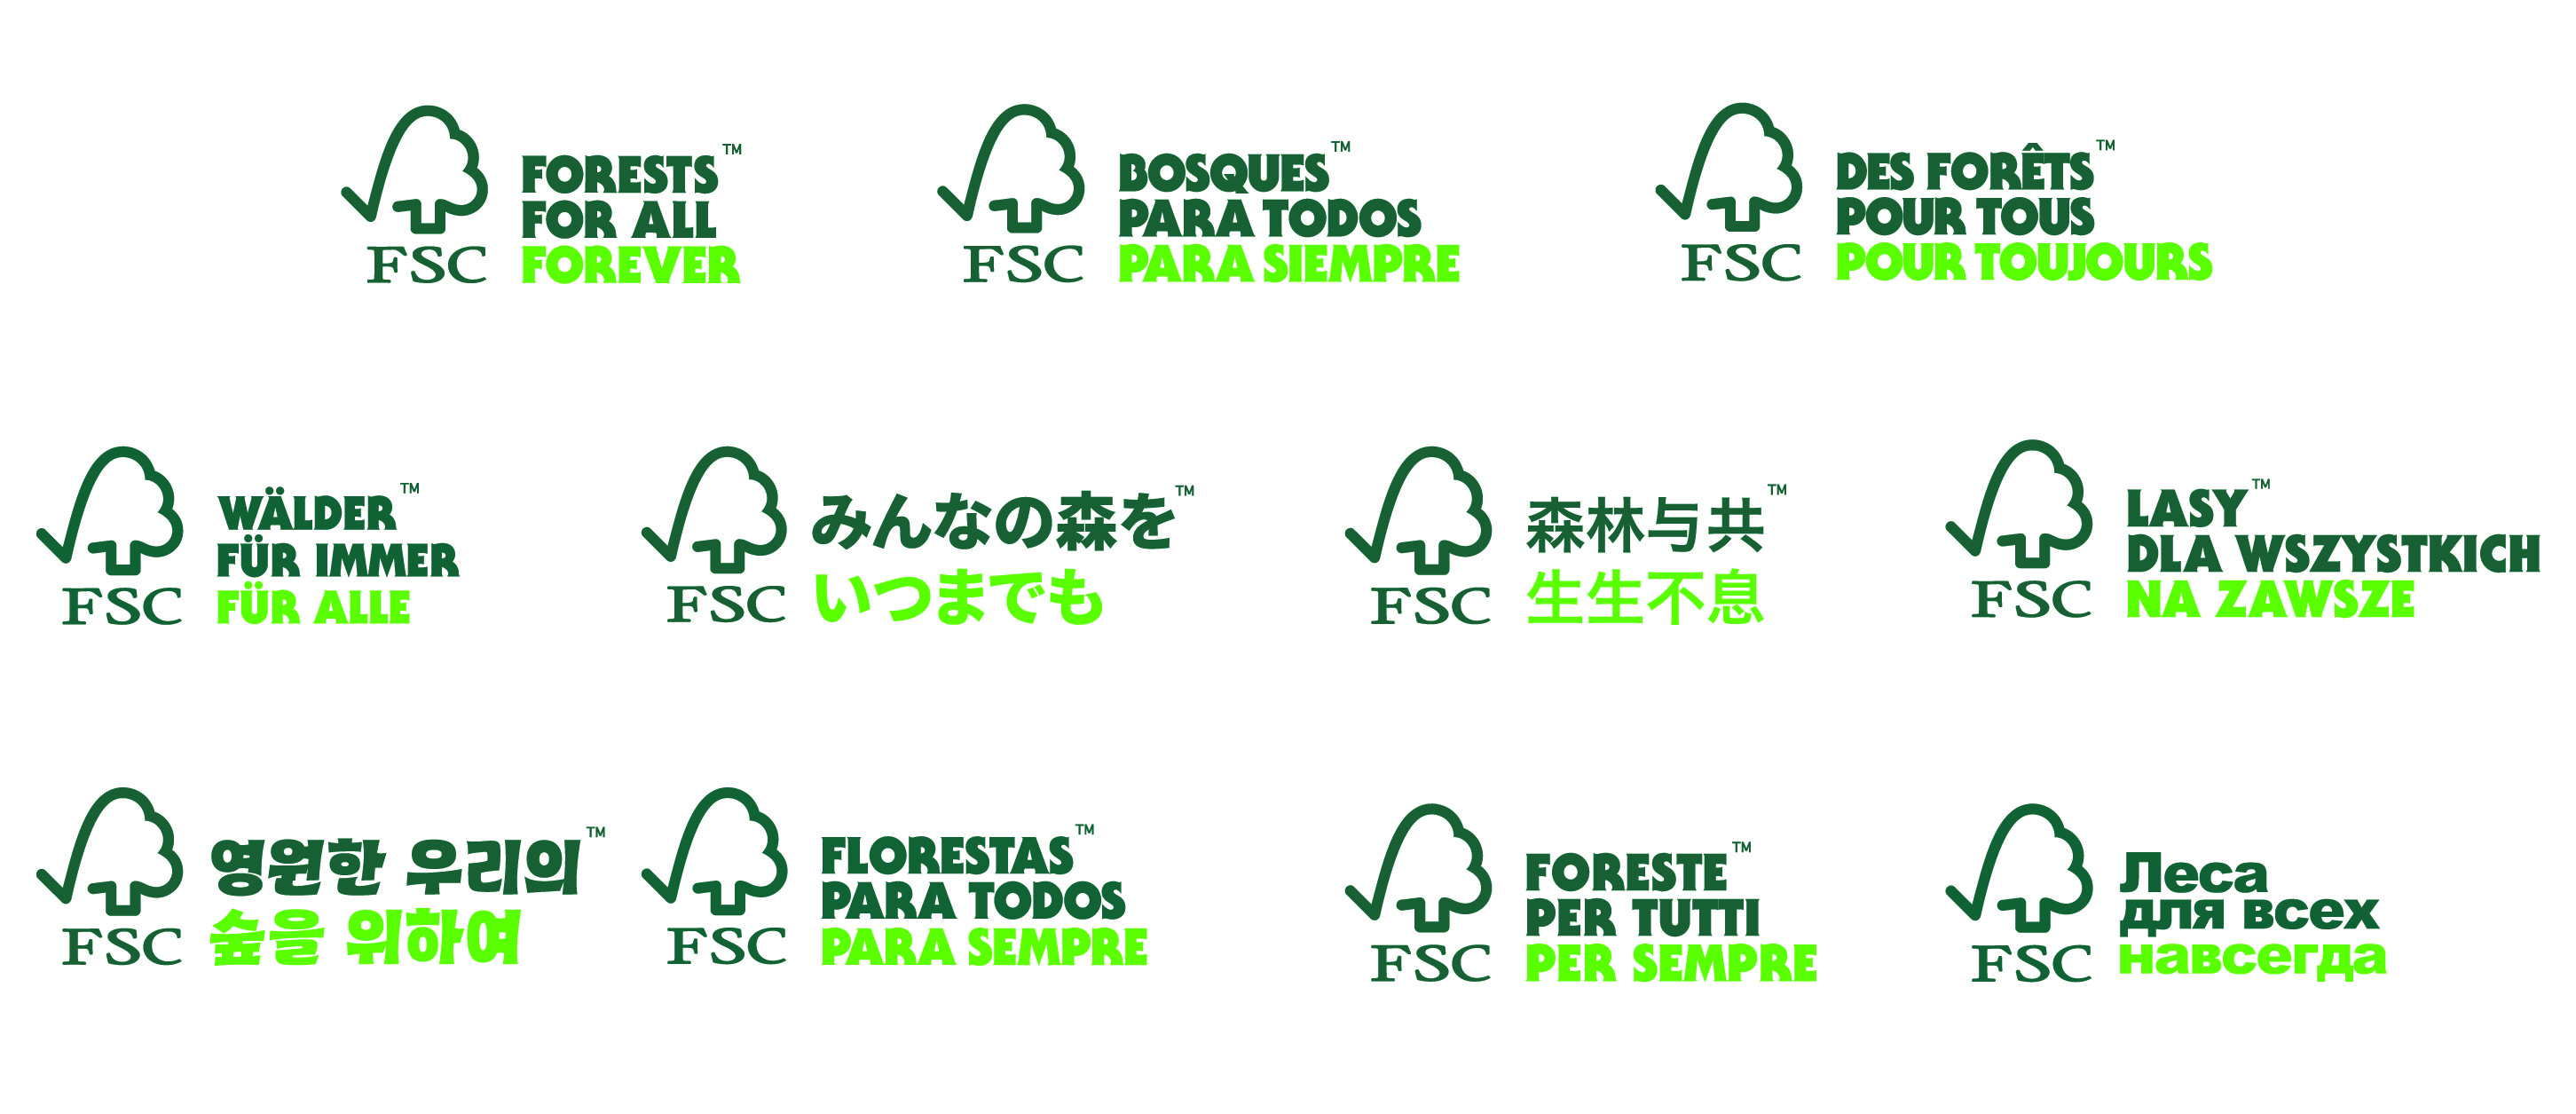 Nowe wersje językowe znaków Forests For All Forever